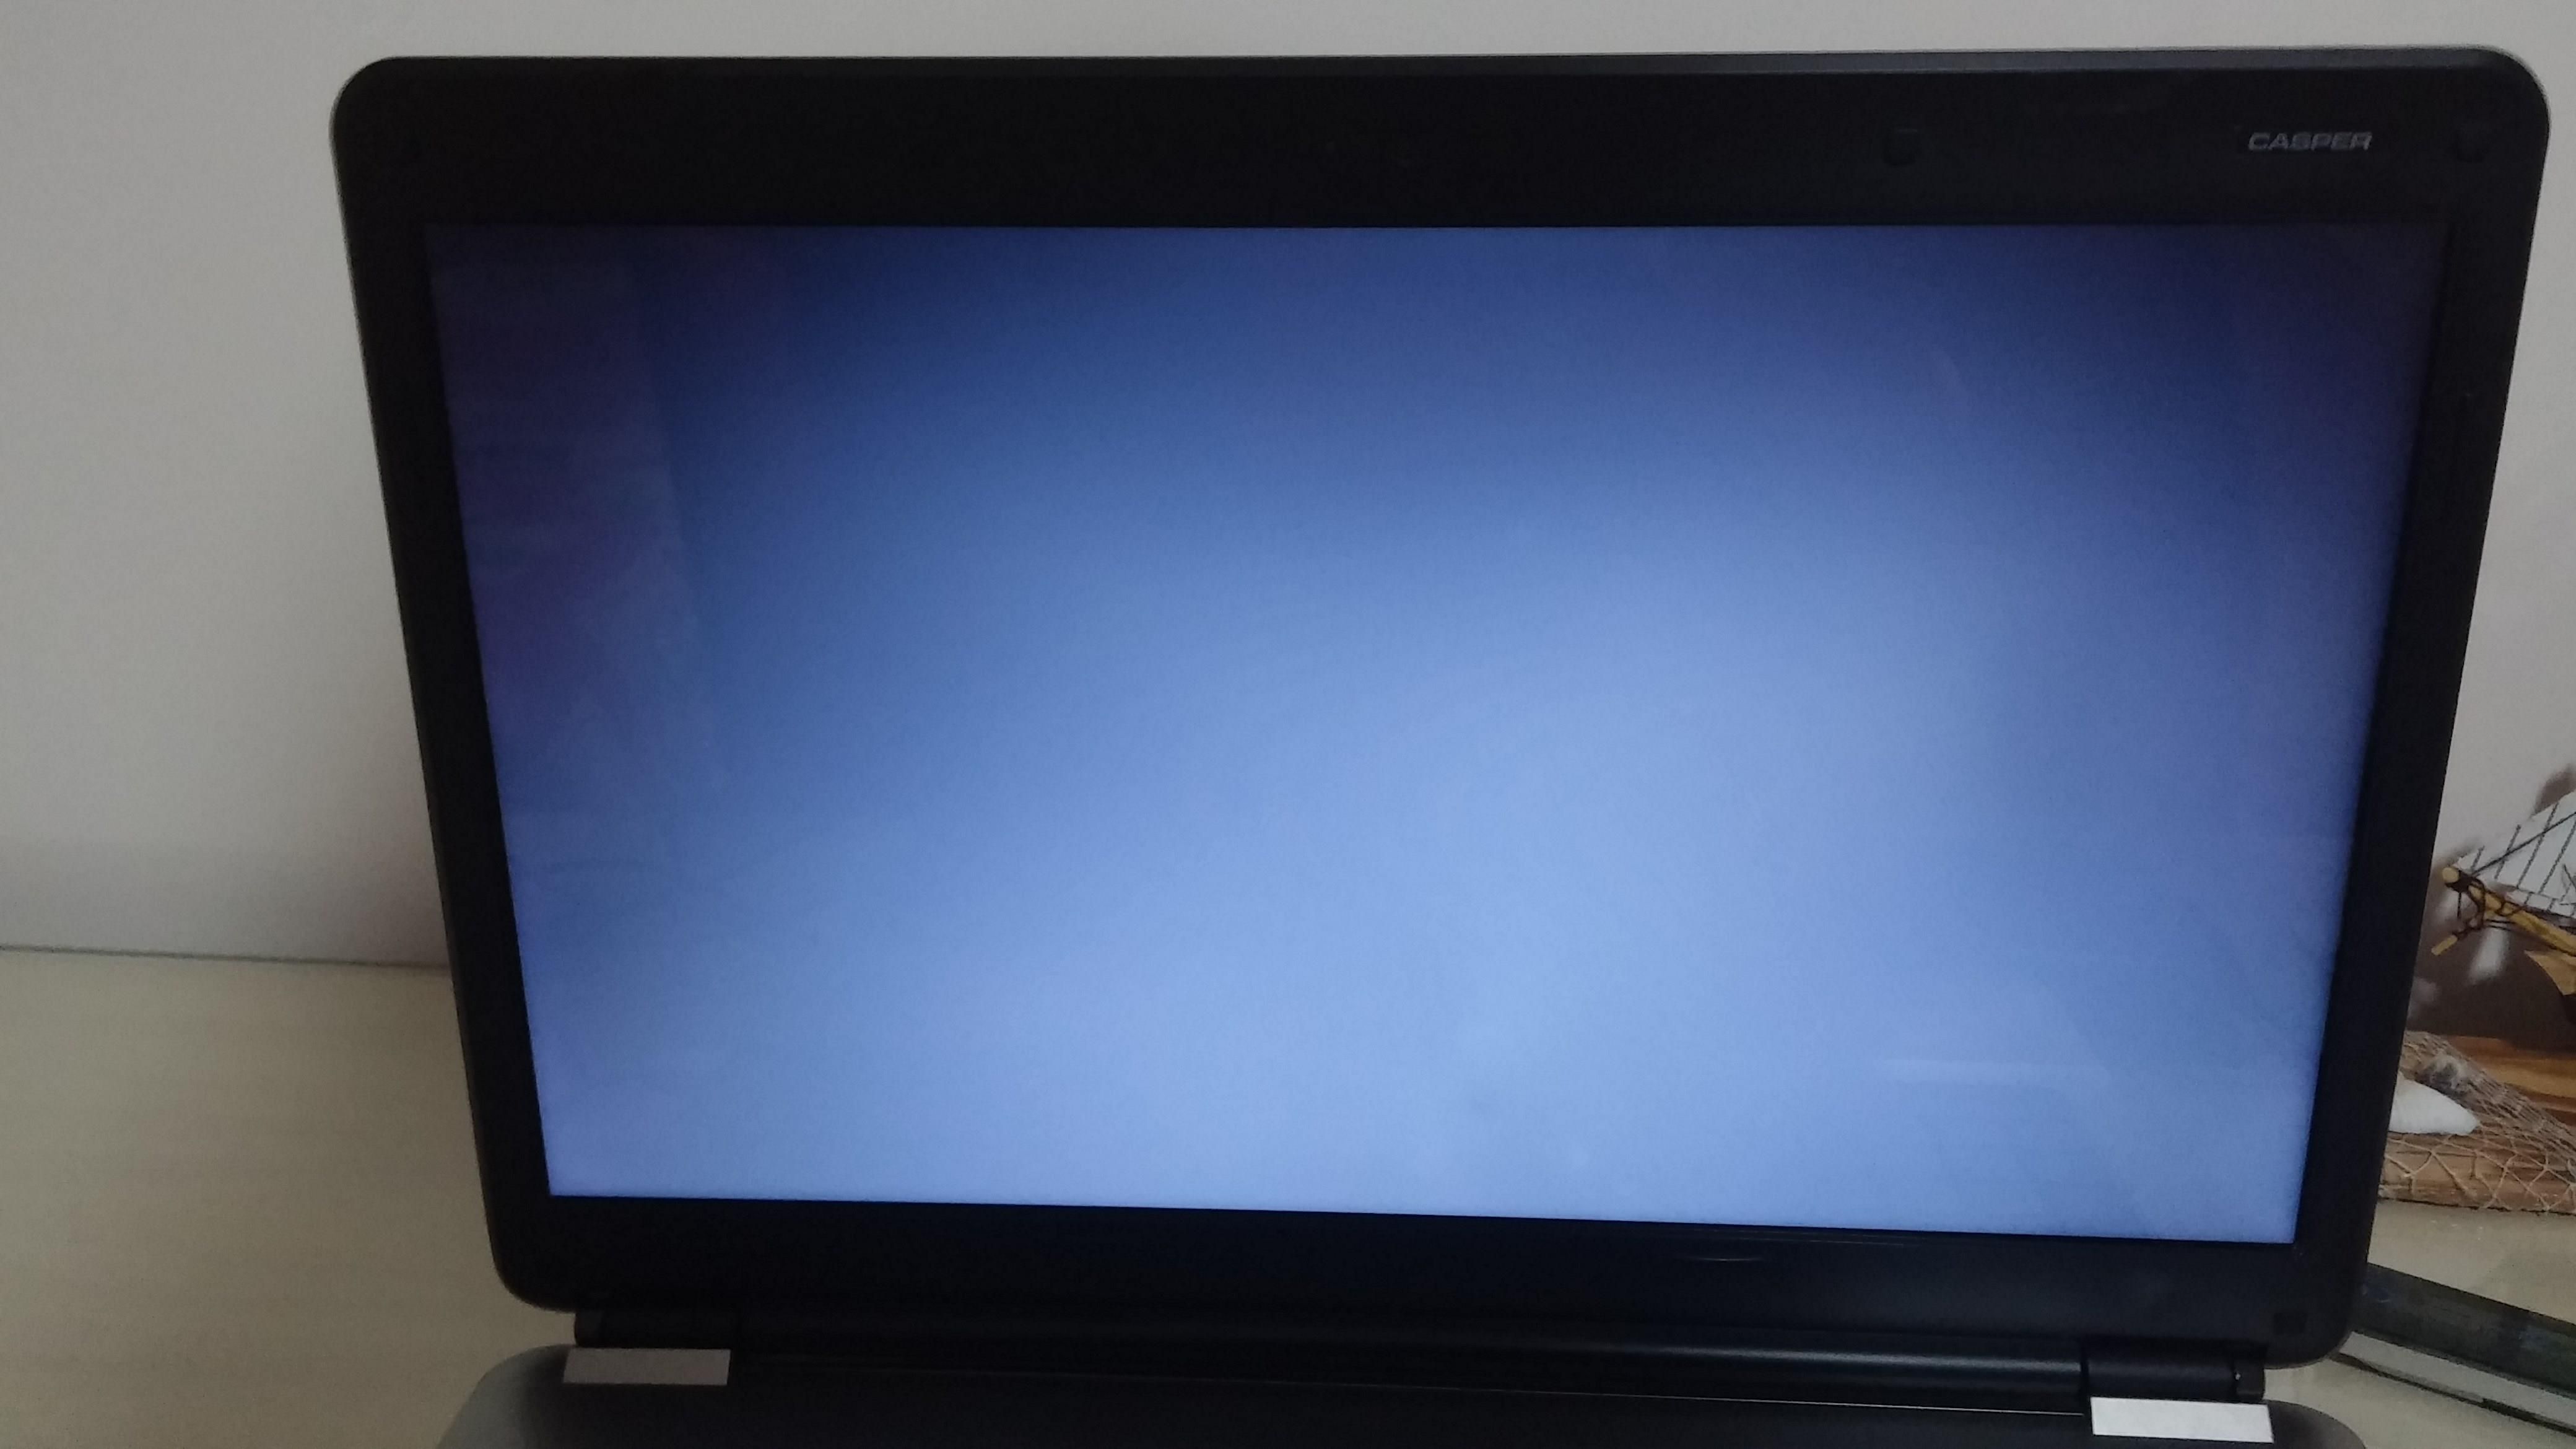 Laptop açılmıyor - siyah ekranda imleç sorunu | Technopat Sosyal